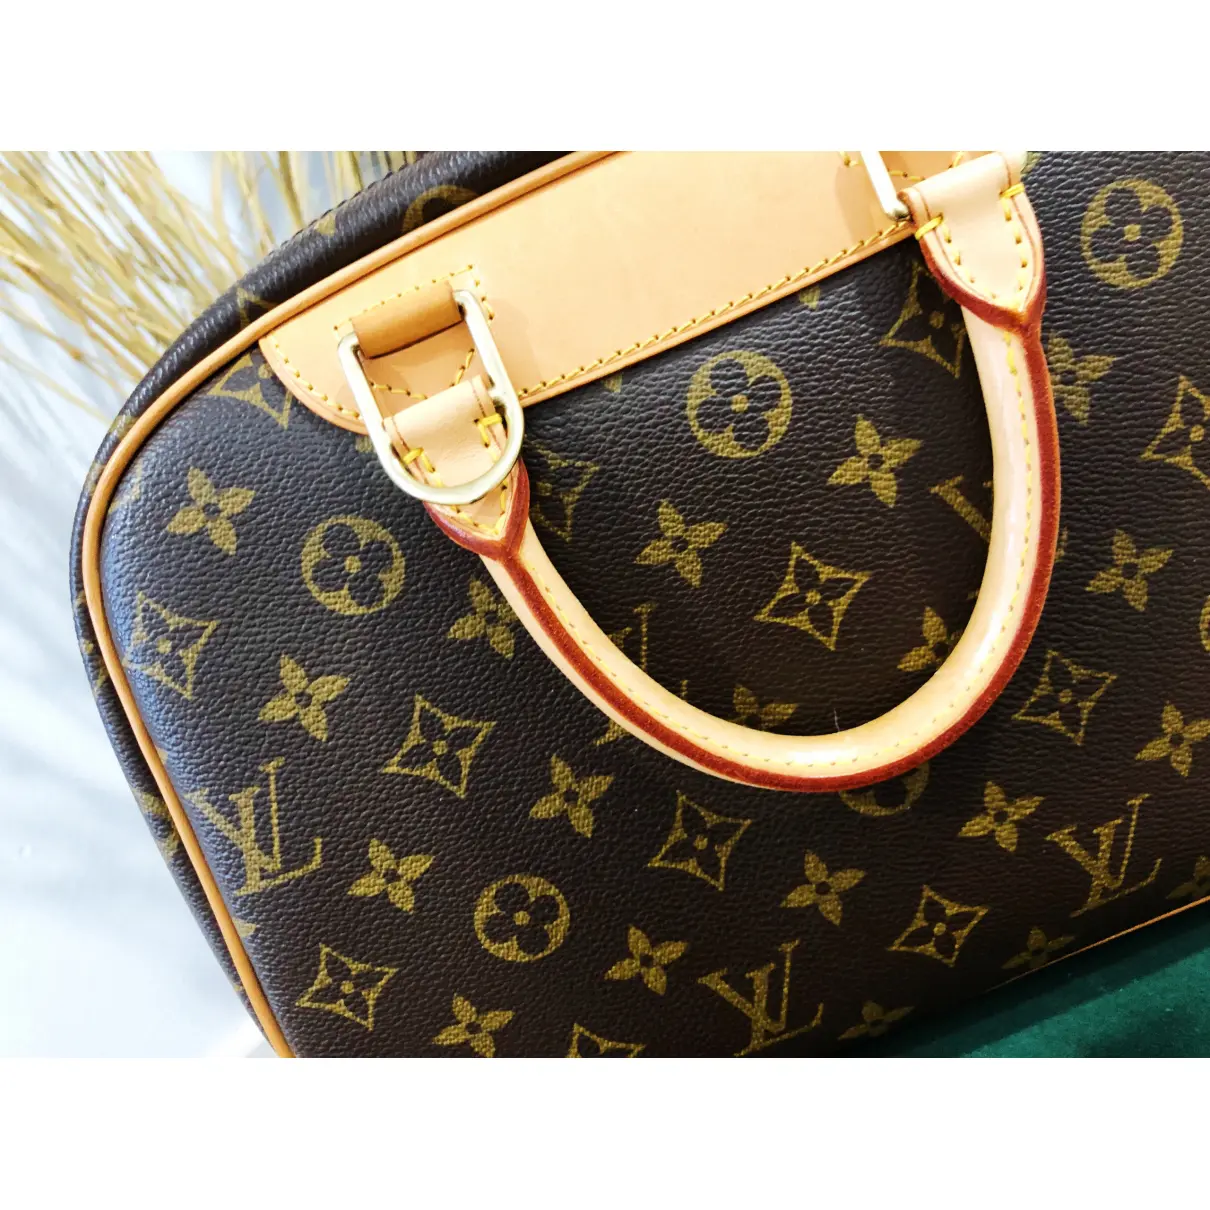 Buy Louis Vuitton Trouville leather handbag online